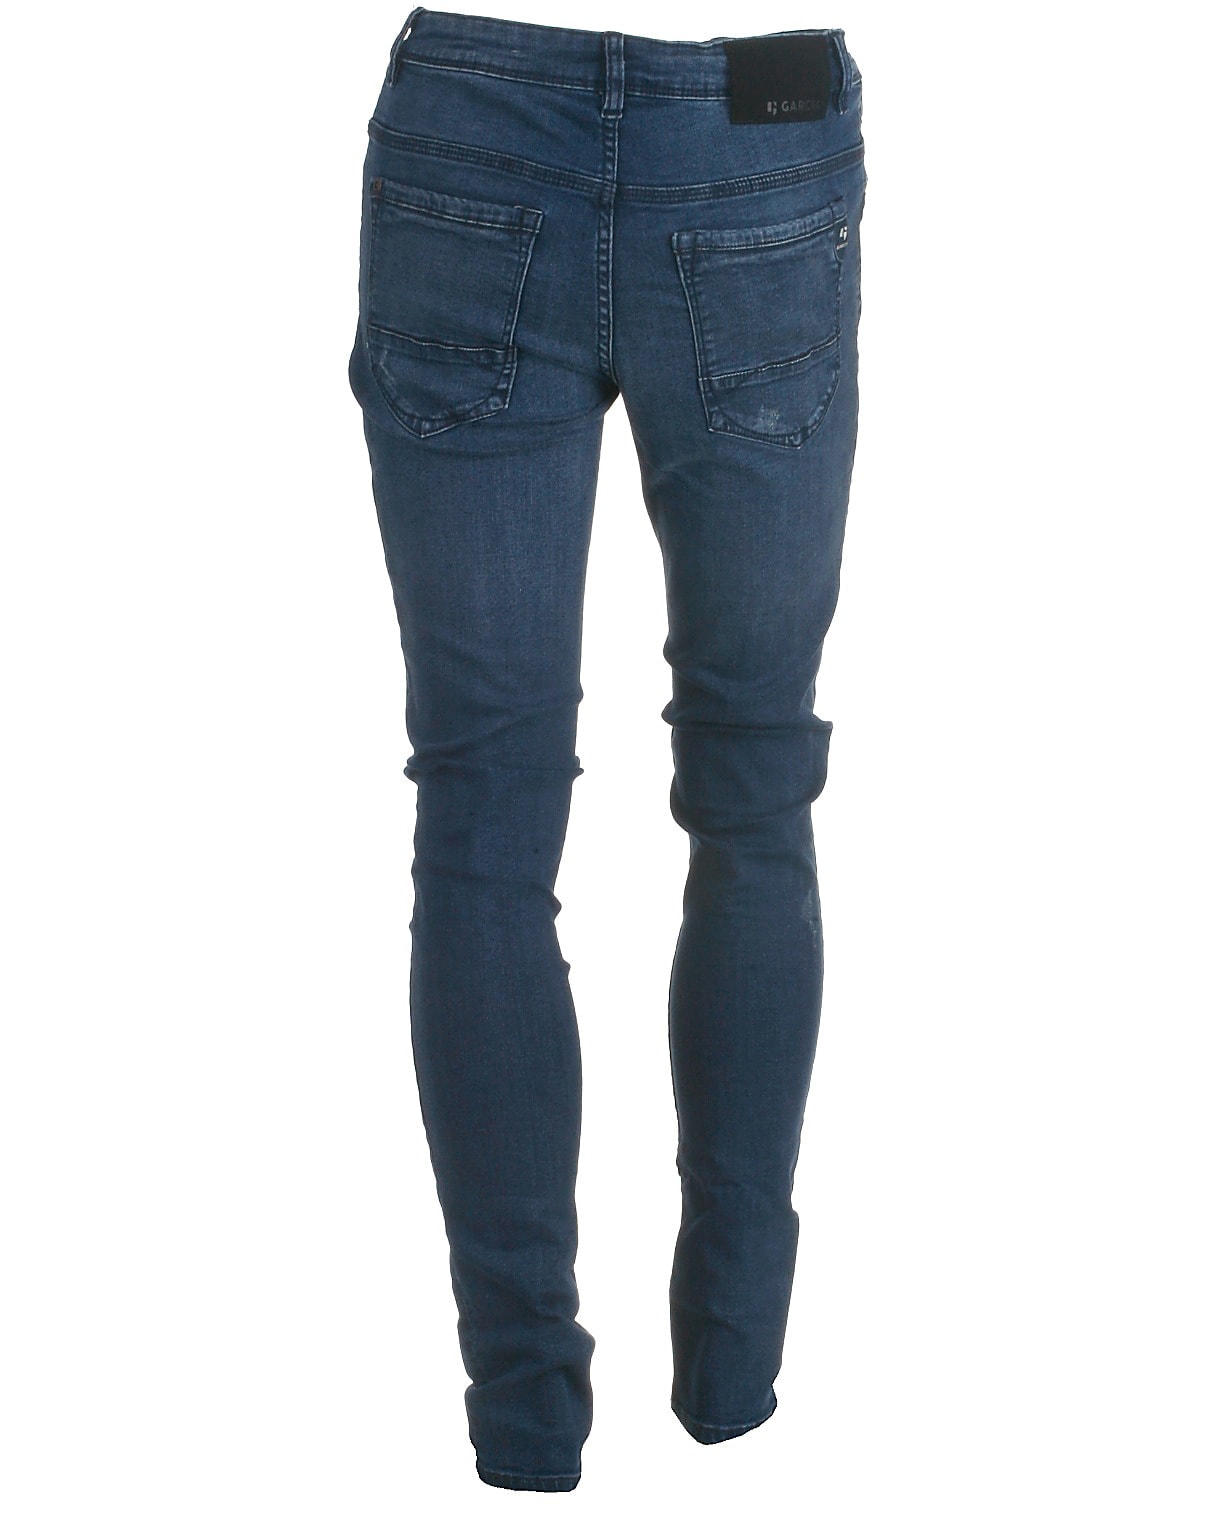 Garcia jeans